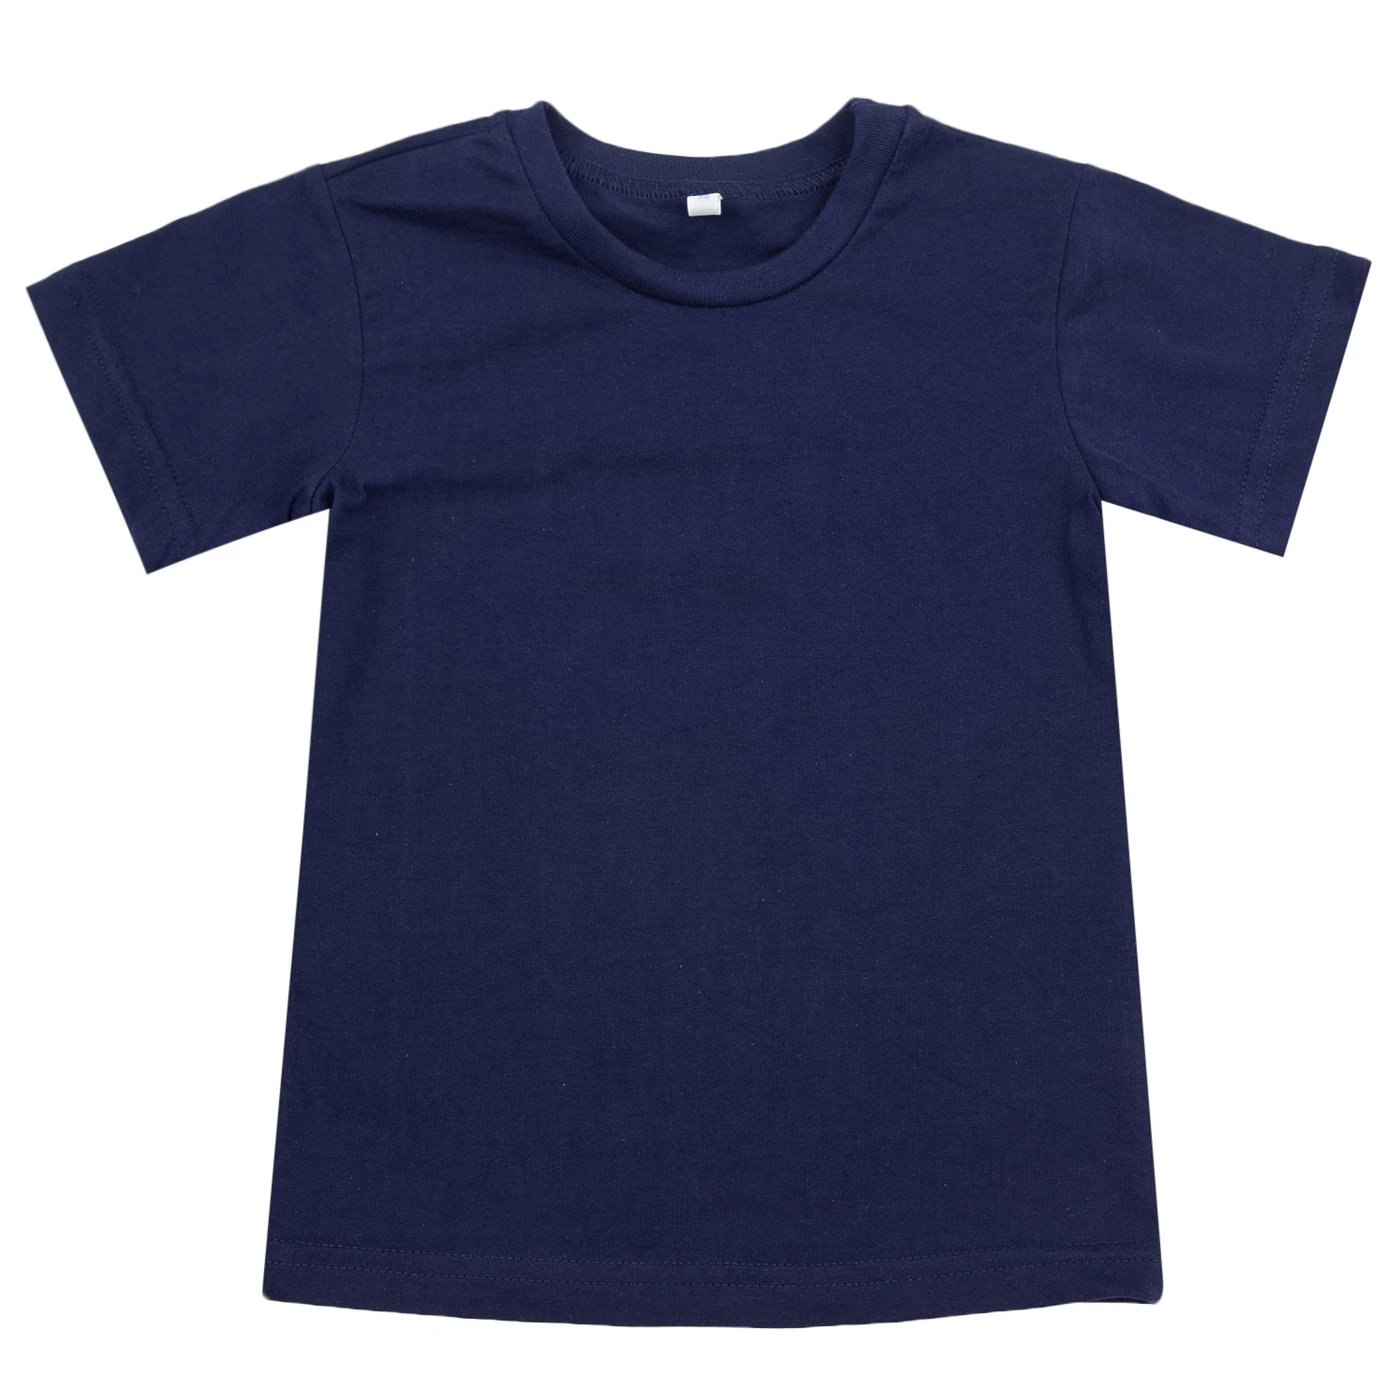 Vodja otroci T-shirt (2 pack), (temno modra/multi-barvne), velikost 104